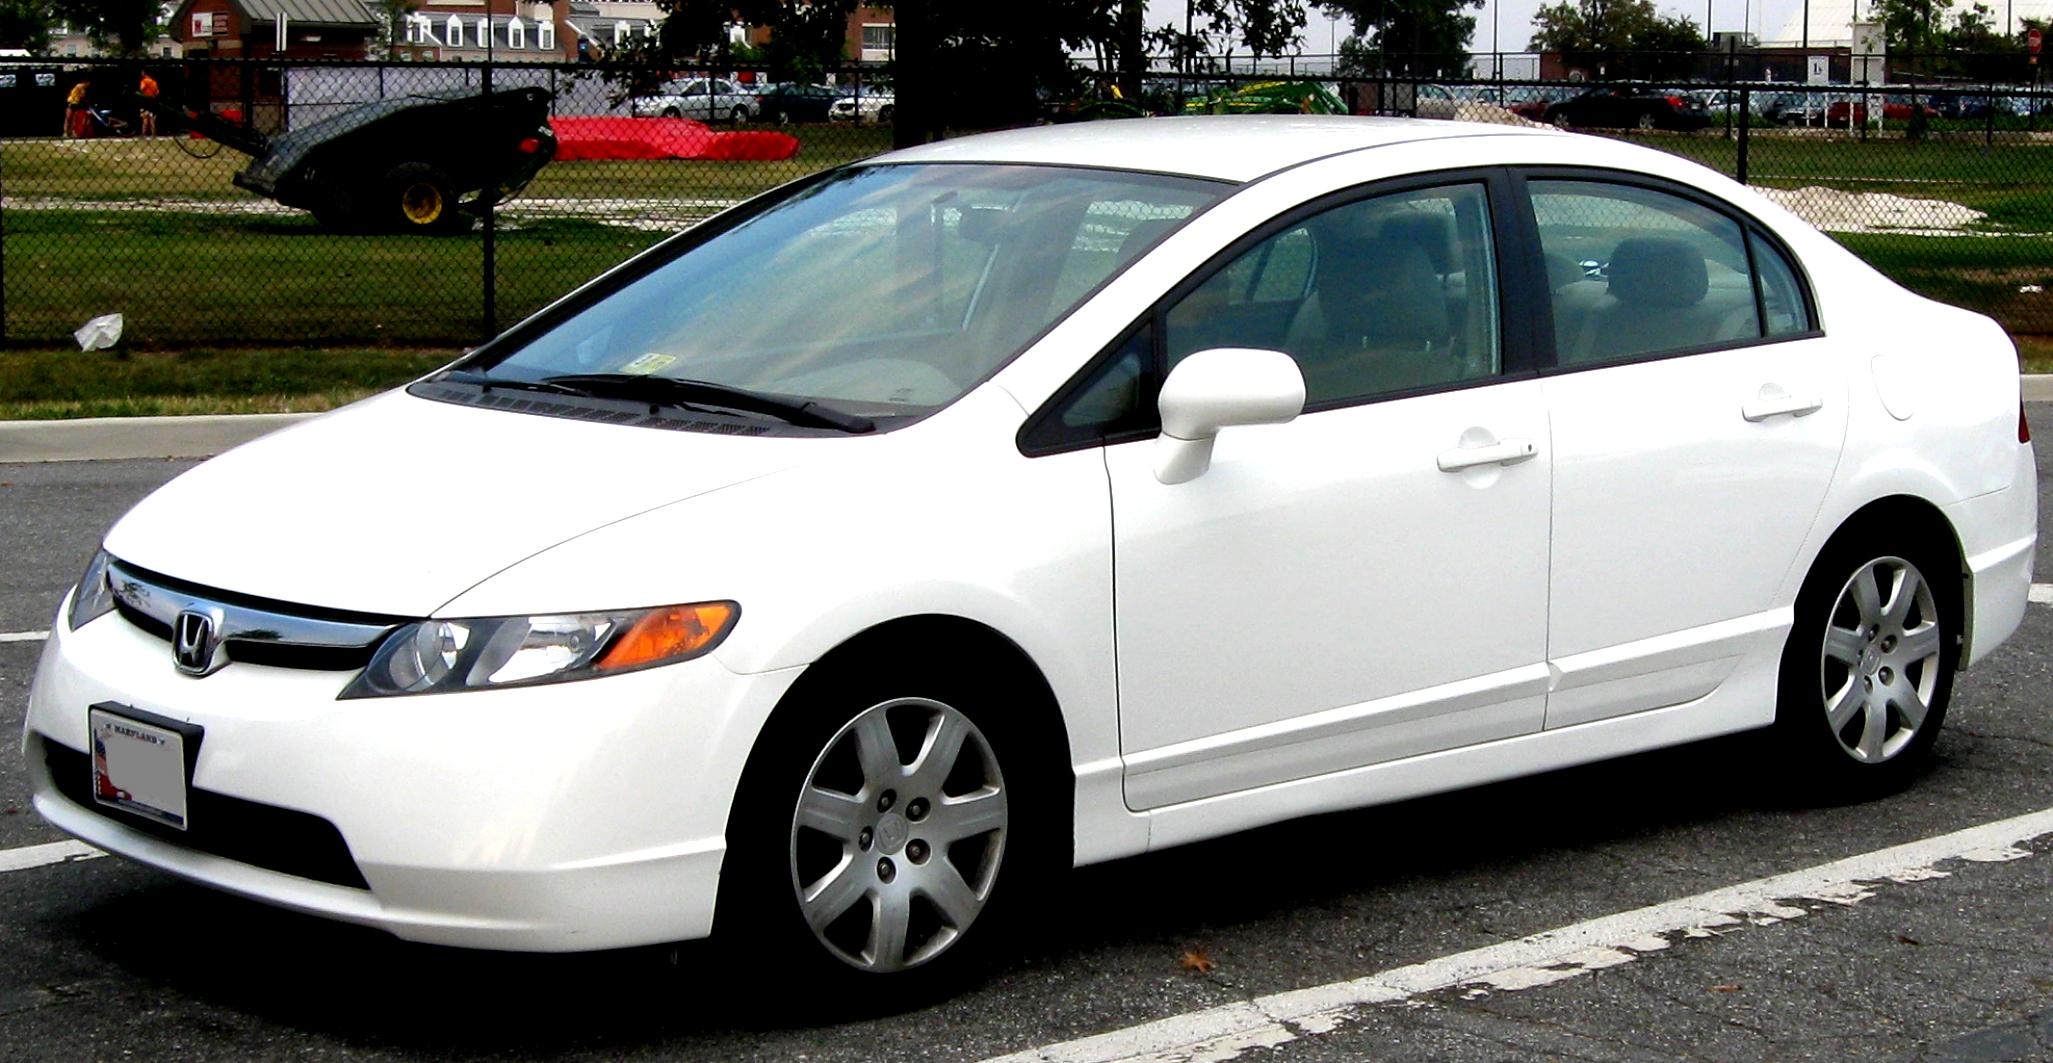 Honda Civic Sedan US 2008 #1